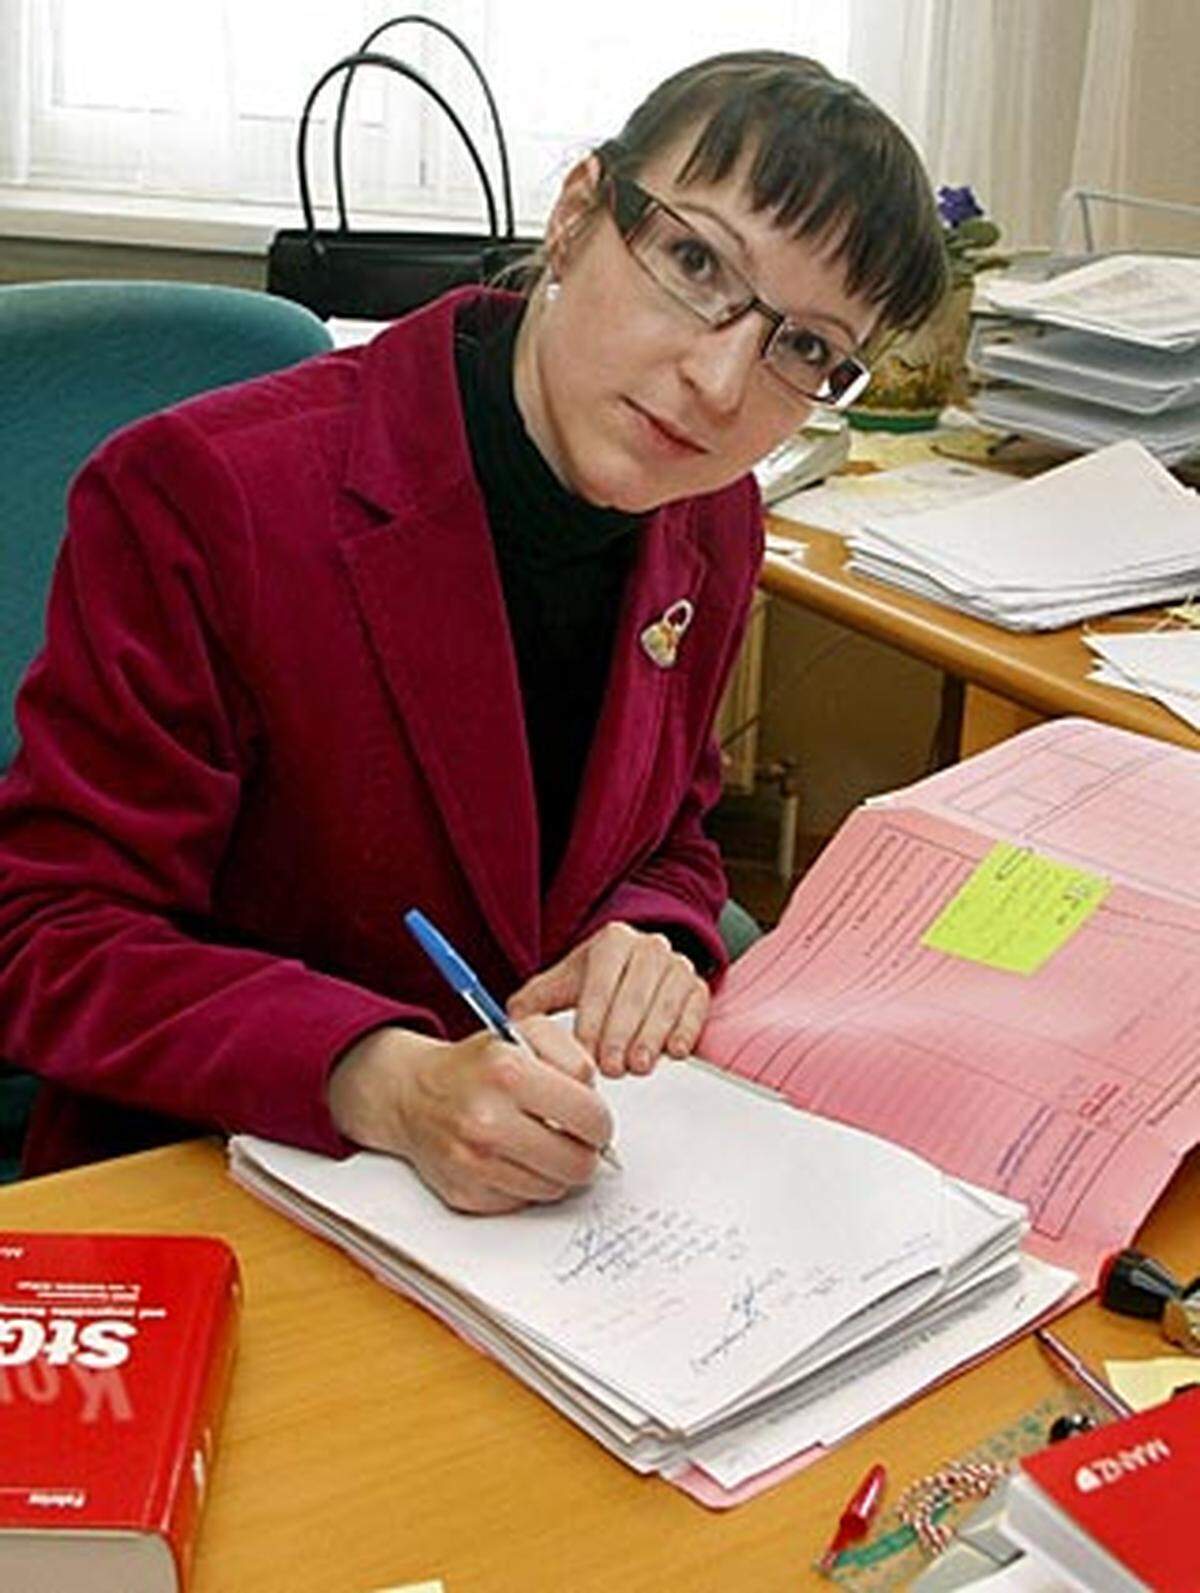 Staatsanwältin CHRISTIANE BURKHEISER (33) hat den Inzest-Fall von der ersten Stunde an betreut: Die junge Anklägerin hatte am 19. April 2008 Journaldienst, als die Causa ins Rollen kam.